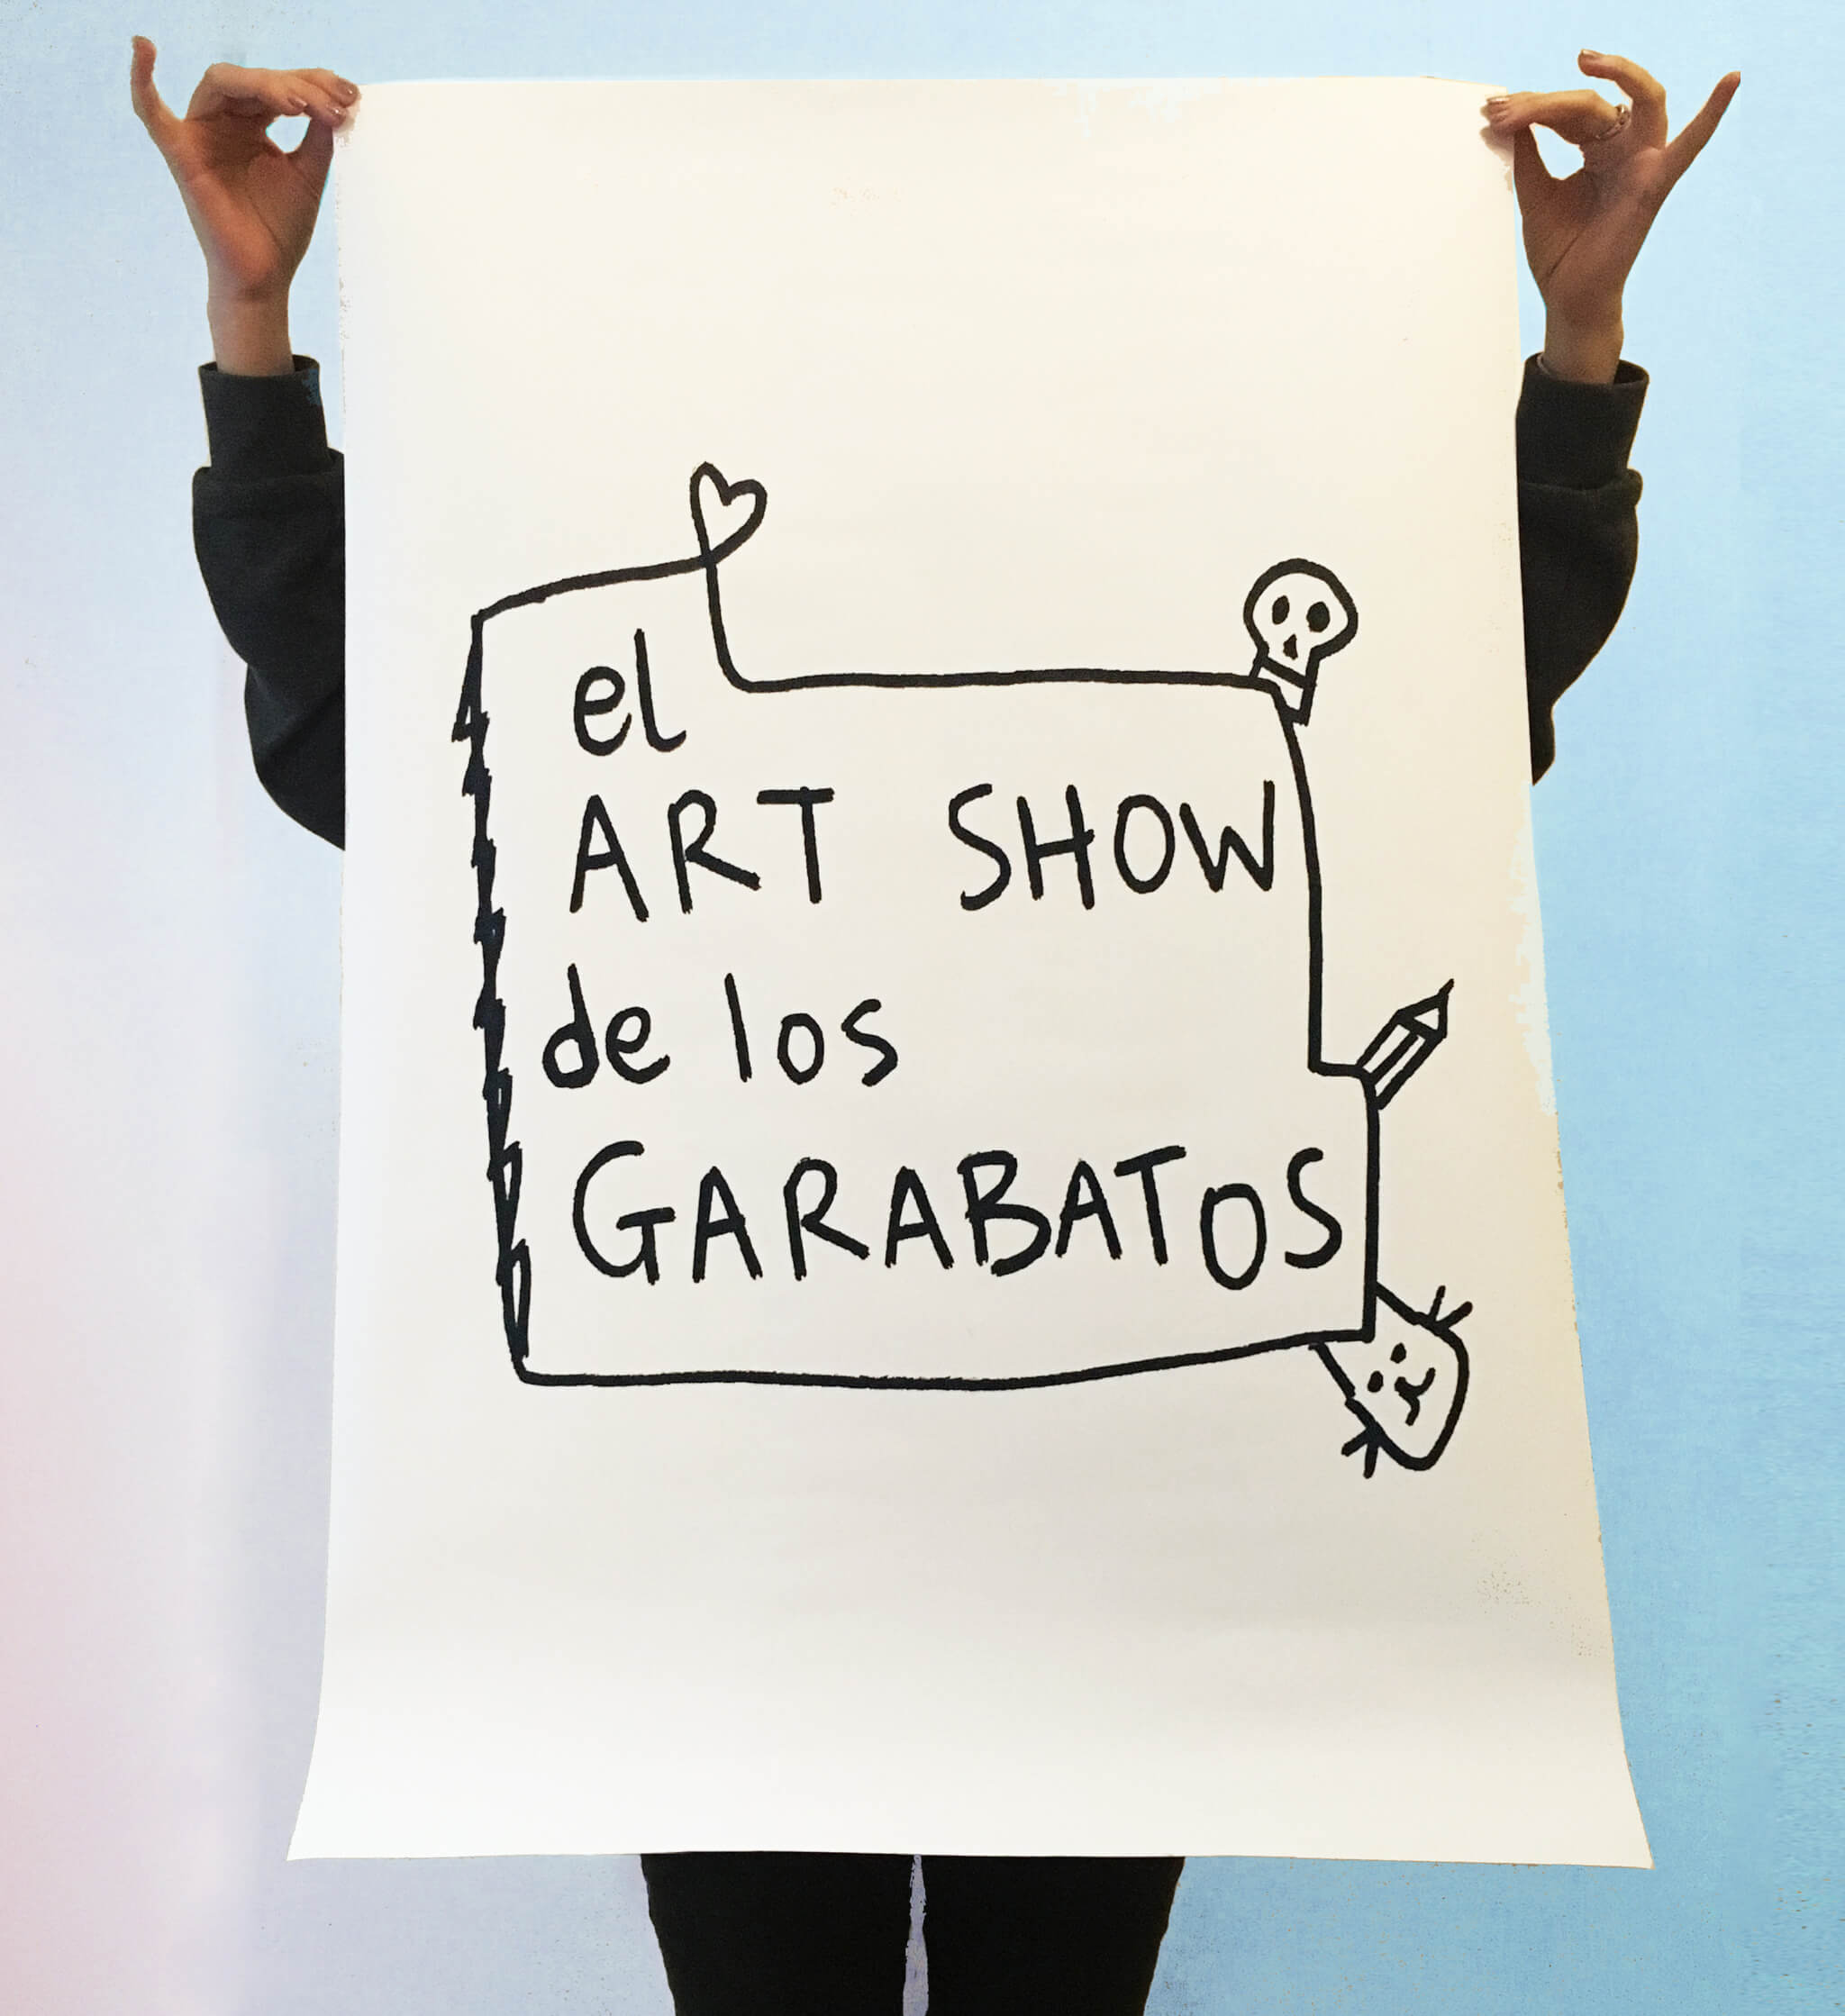 Exposición "El art show de los garabatos"